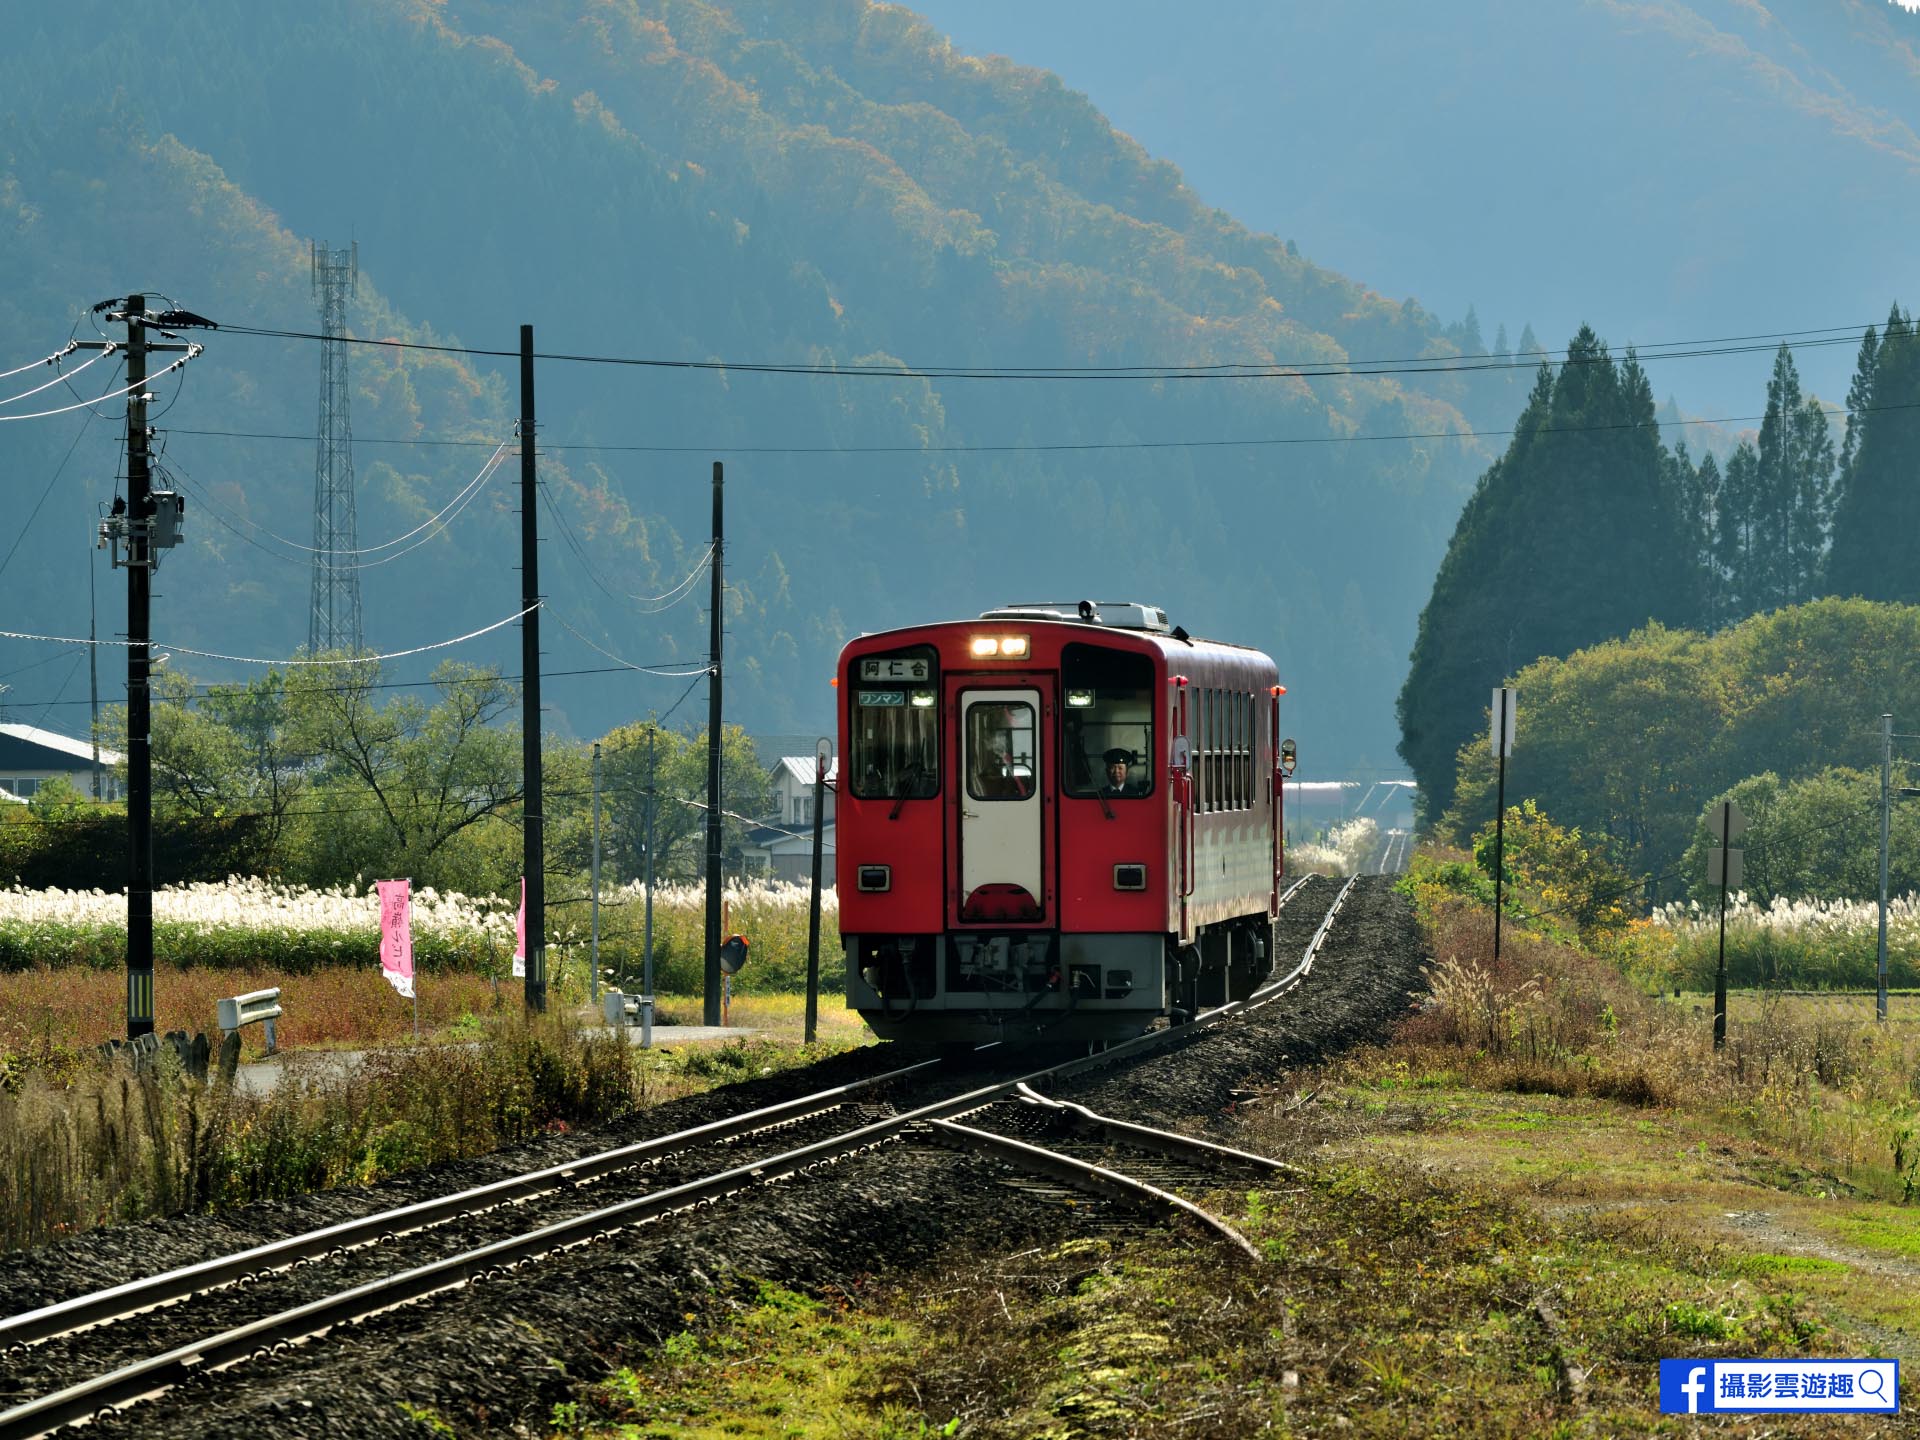 [ 攝影雲遊趣 ]12月封面 日本秋田內陸線*微笑鐵路